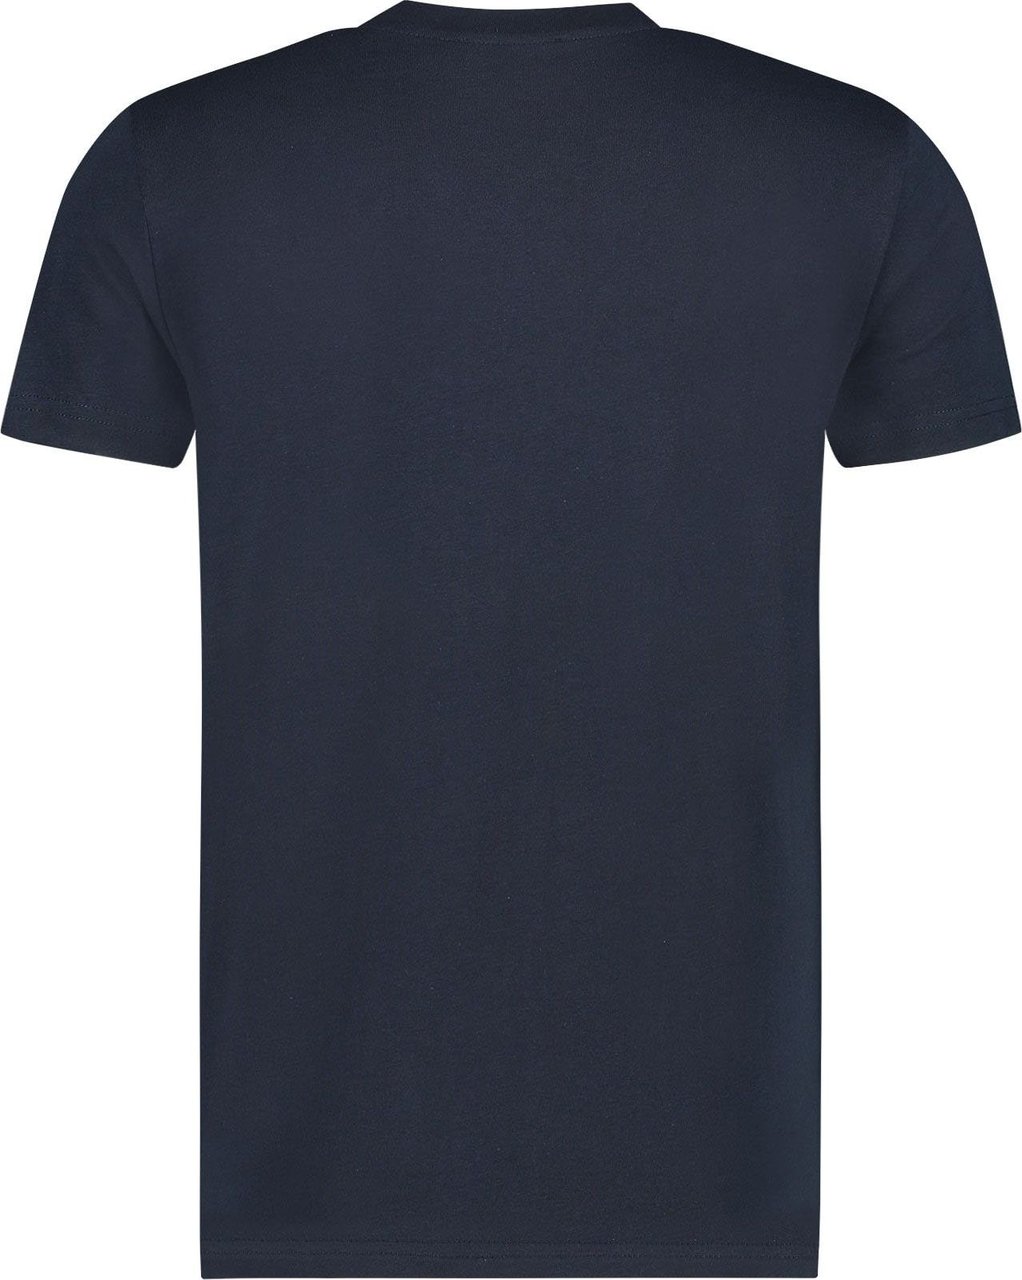 My Brand Tape T-Shirt Heren Blauw/Wit Blauw